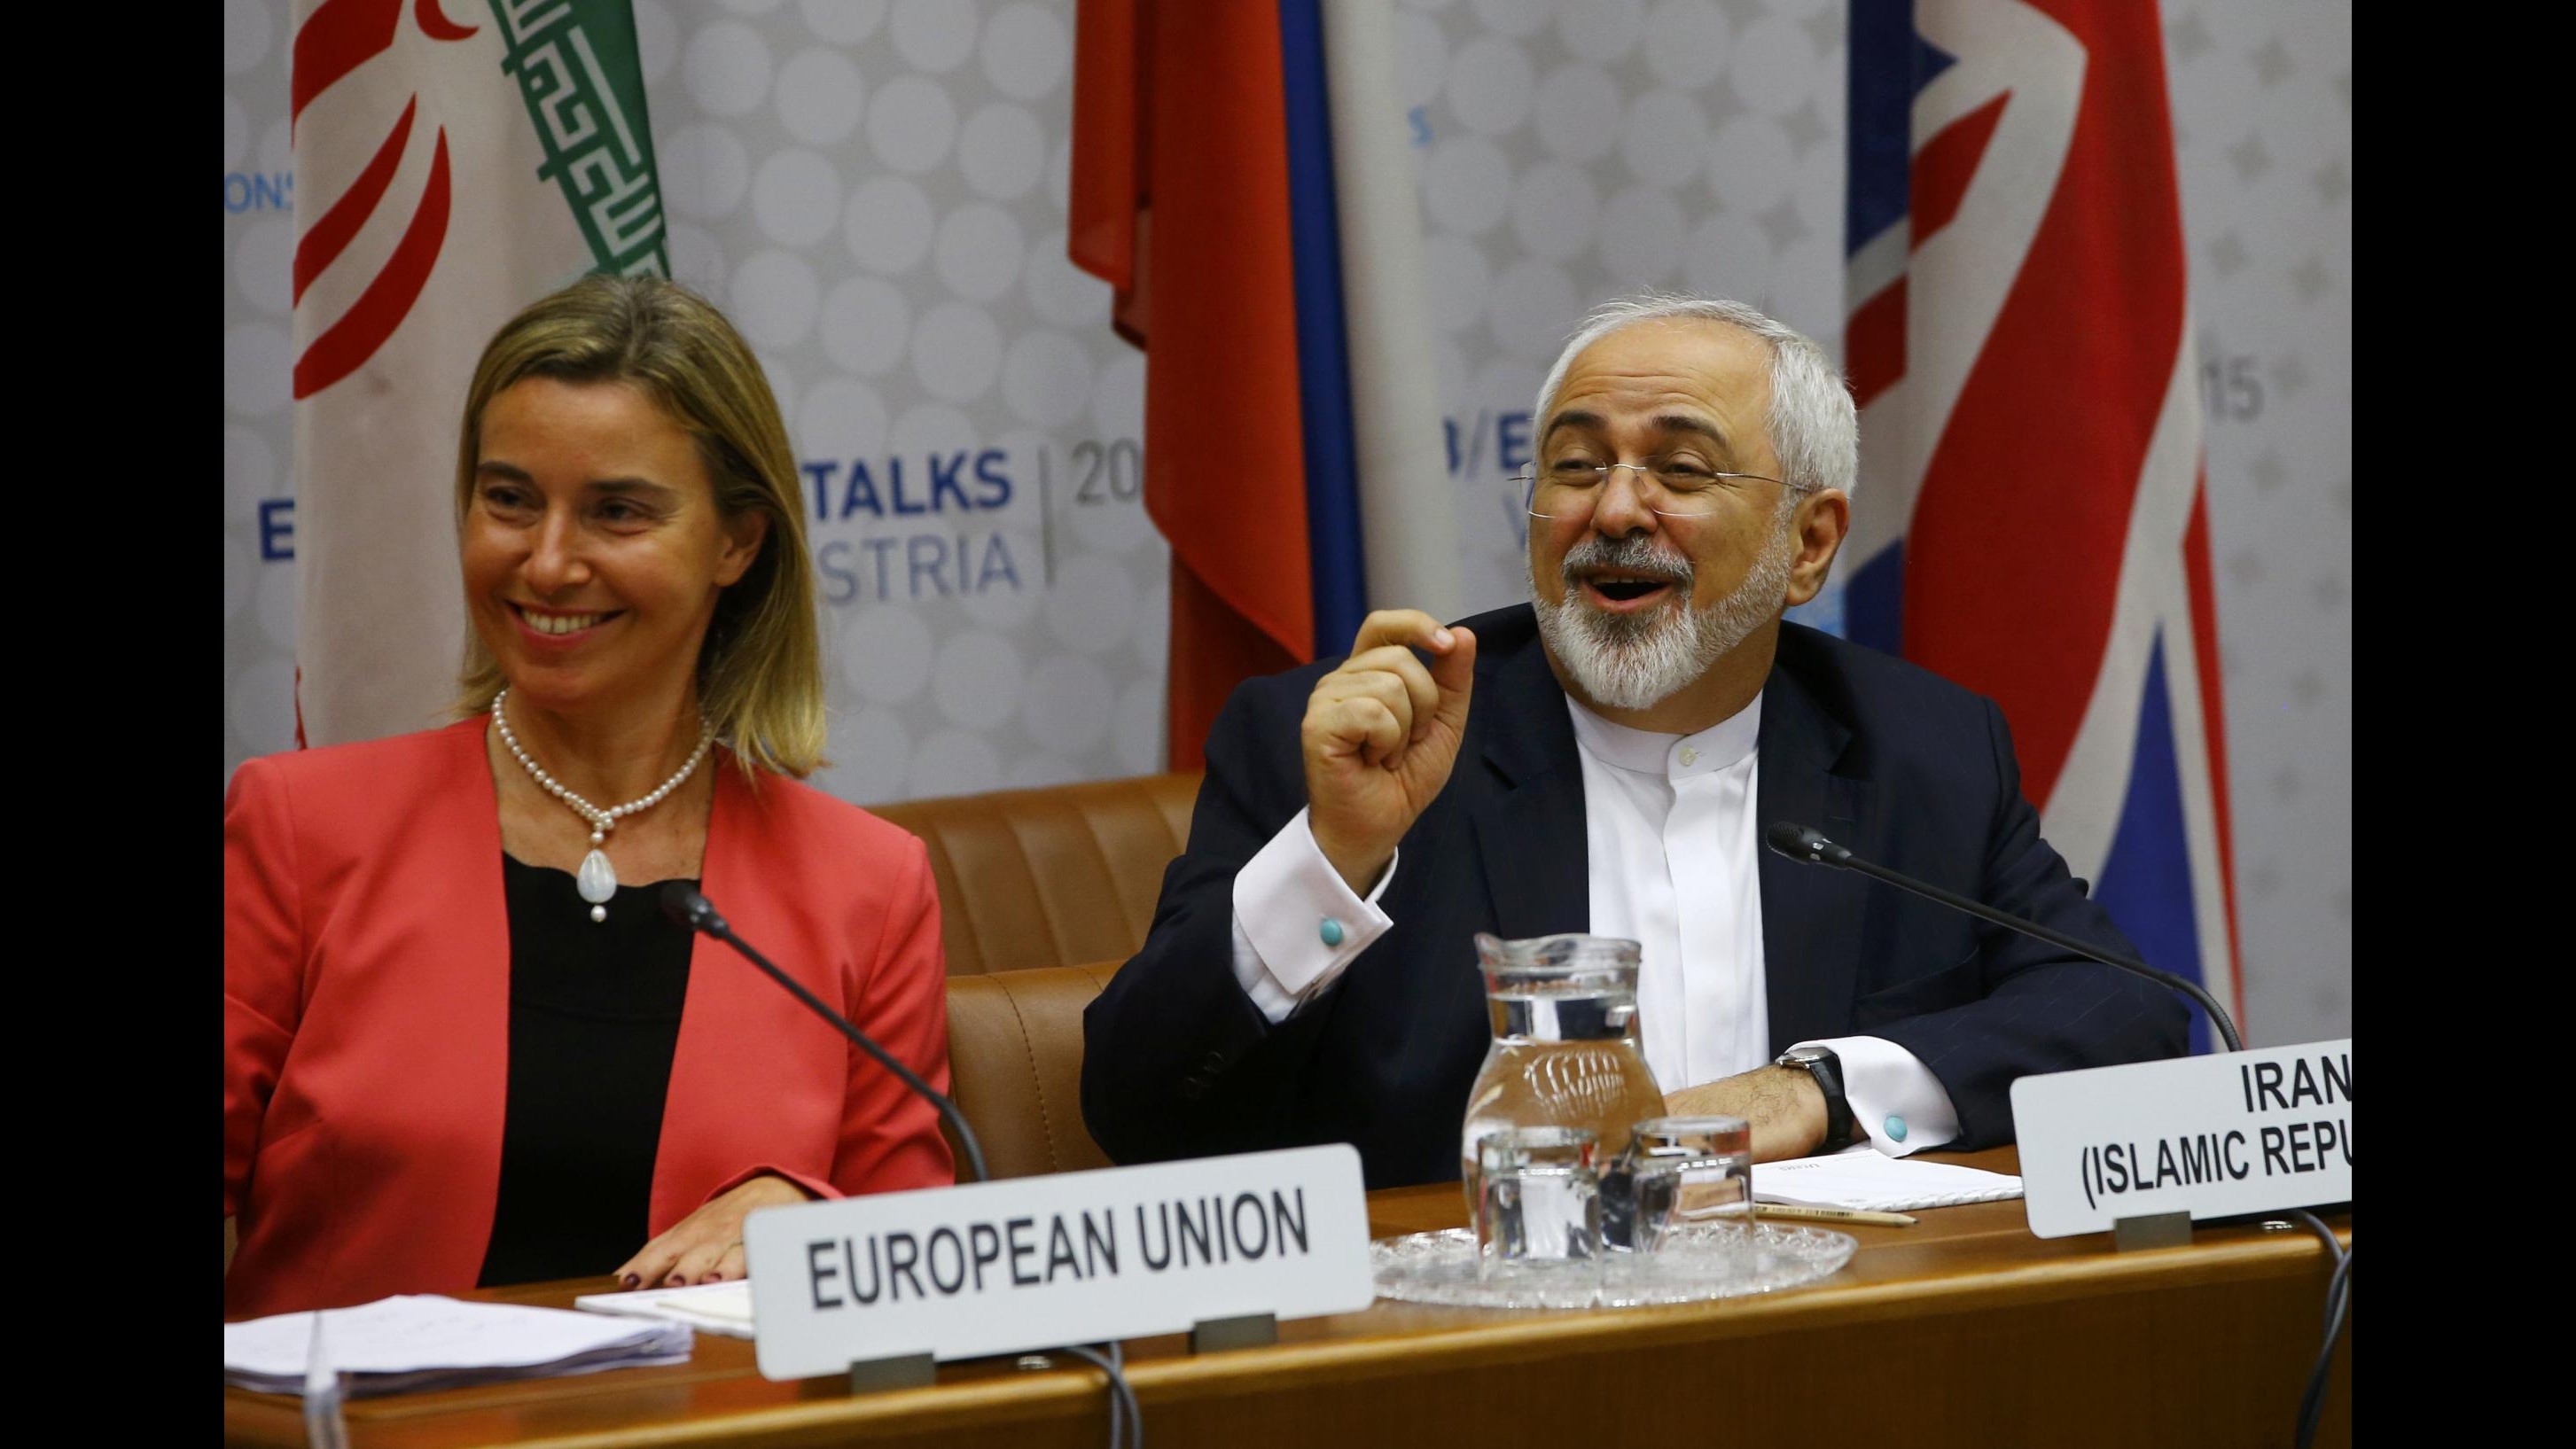 Iran, accordo sul nucleare: tutte le tappe dal 2002 a oggi